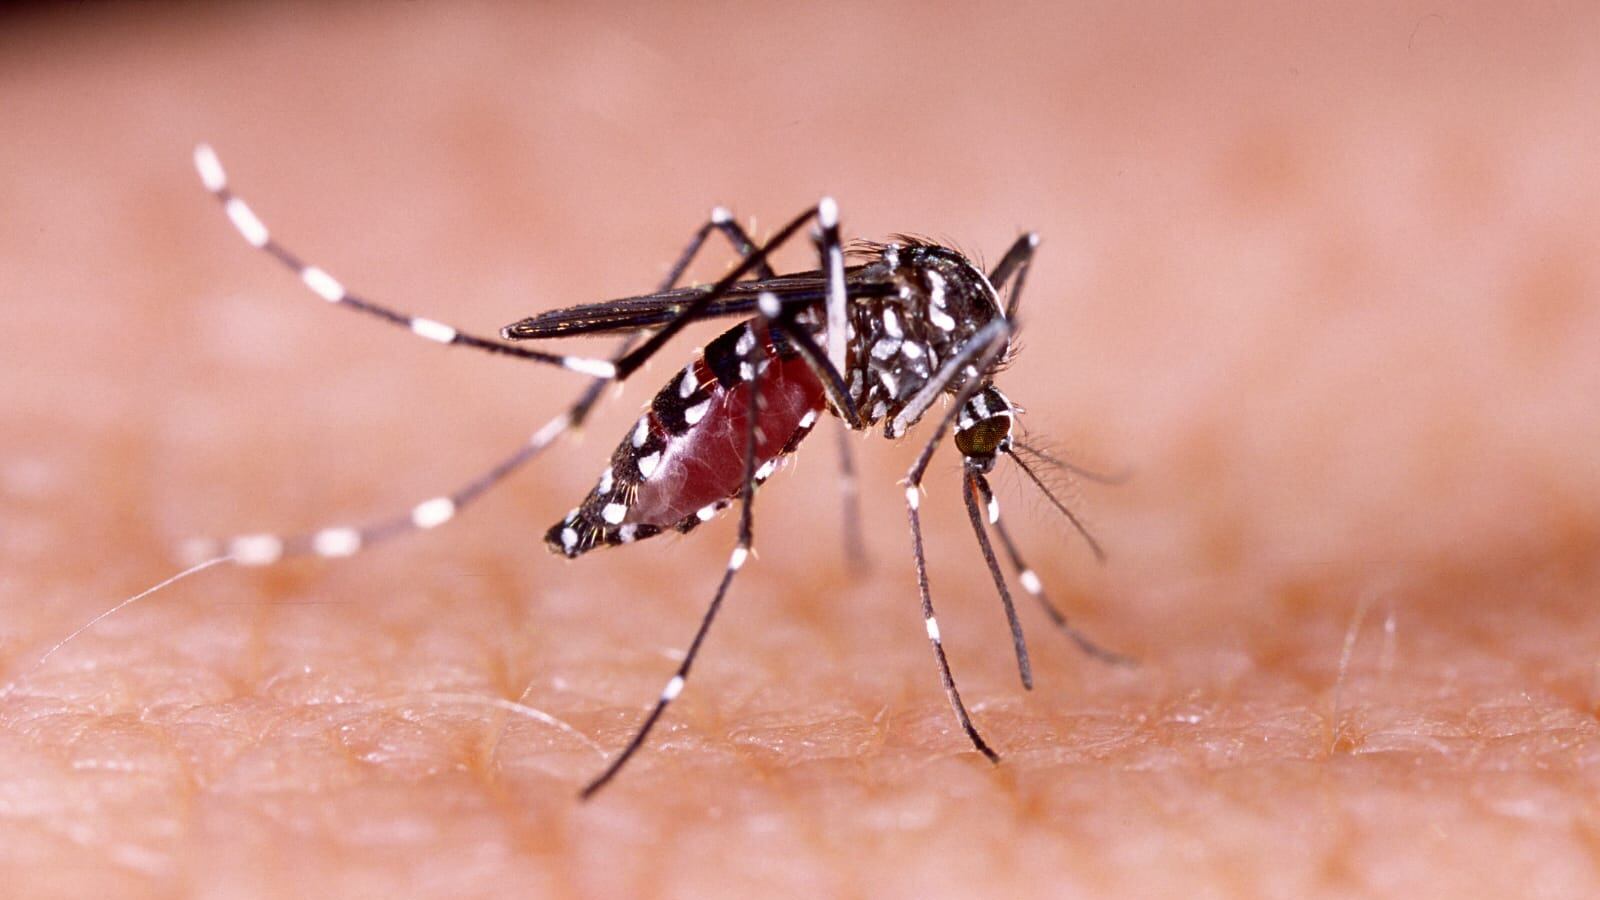 El mosquito es el principal transmisor del dengue por eso hay que tener limpieza y evitar la acumulación de agua.